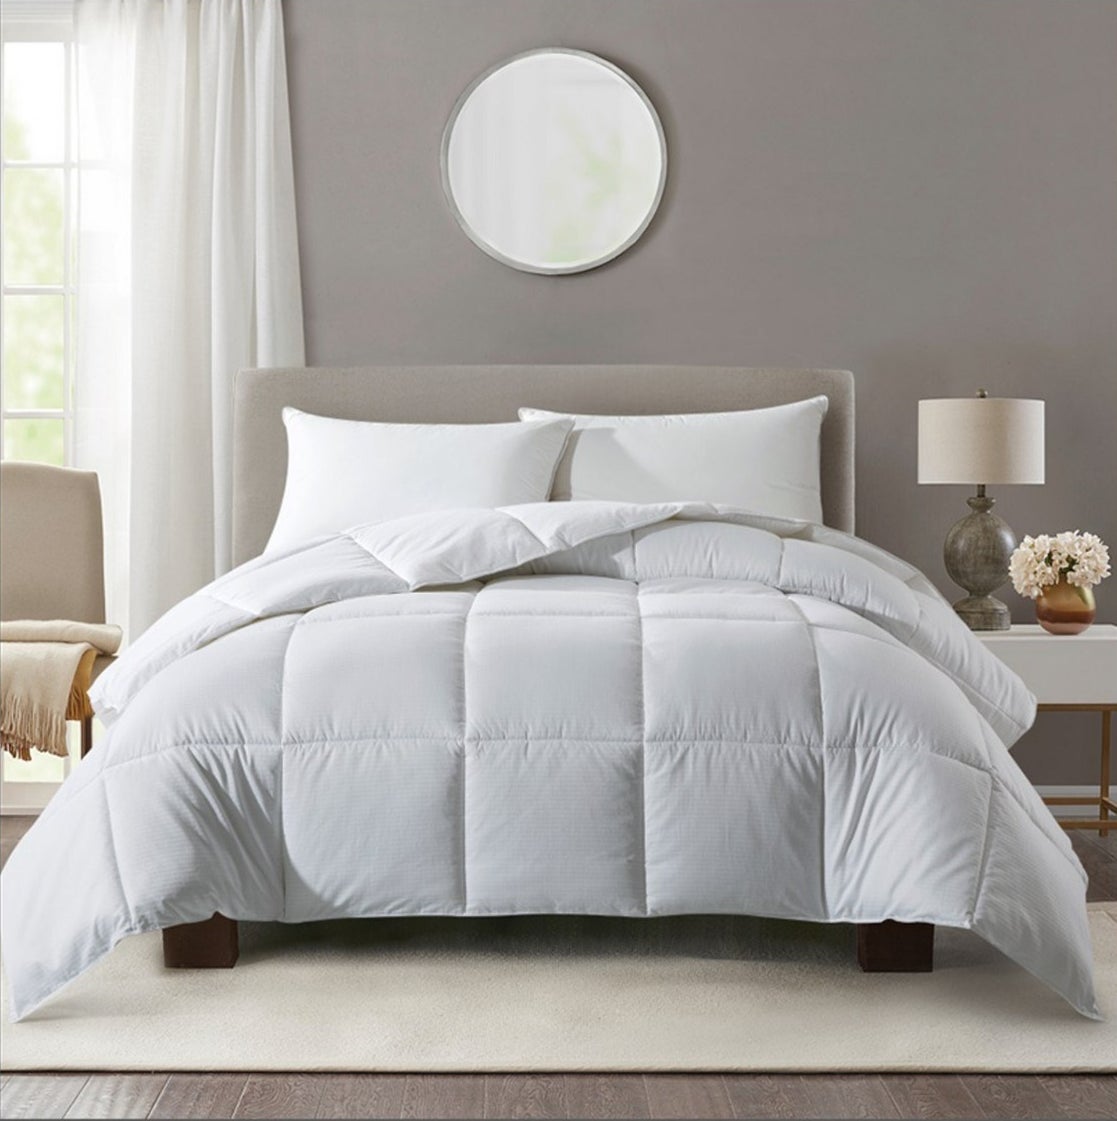 White box design duvet on a bed 